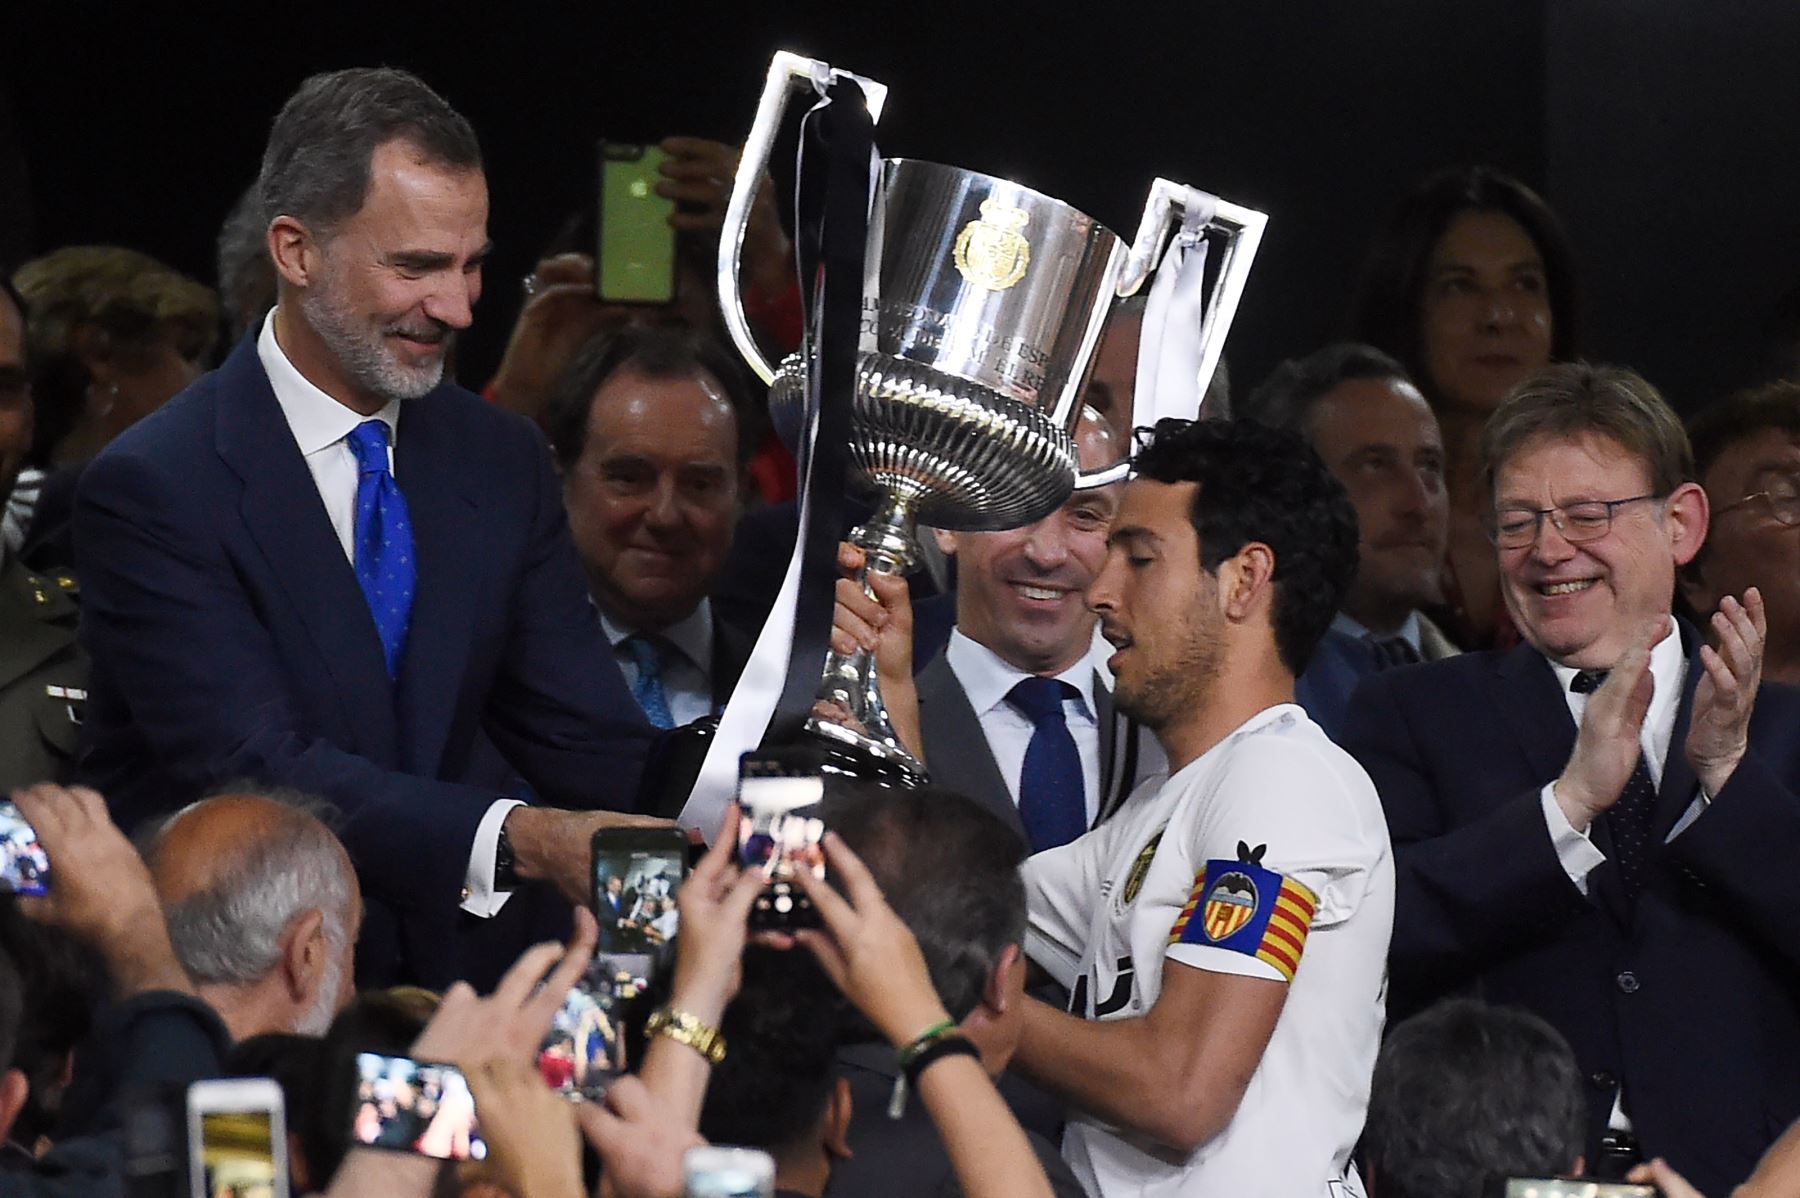 El rey español Felipe VI le entrega el trofeo al mediocampista, Daniel Parejo, luego de ganar el último partido de fútbol de la Copa del Rey de España entre Barcelona y Valencia,en el estadio Benito Villamarin de Sevilla.Foto:AFP